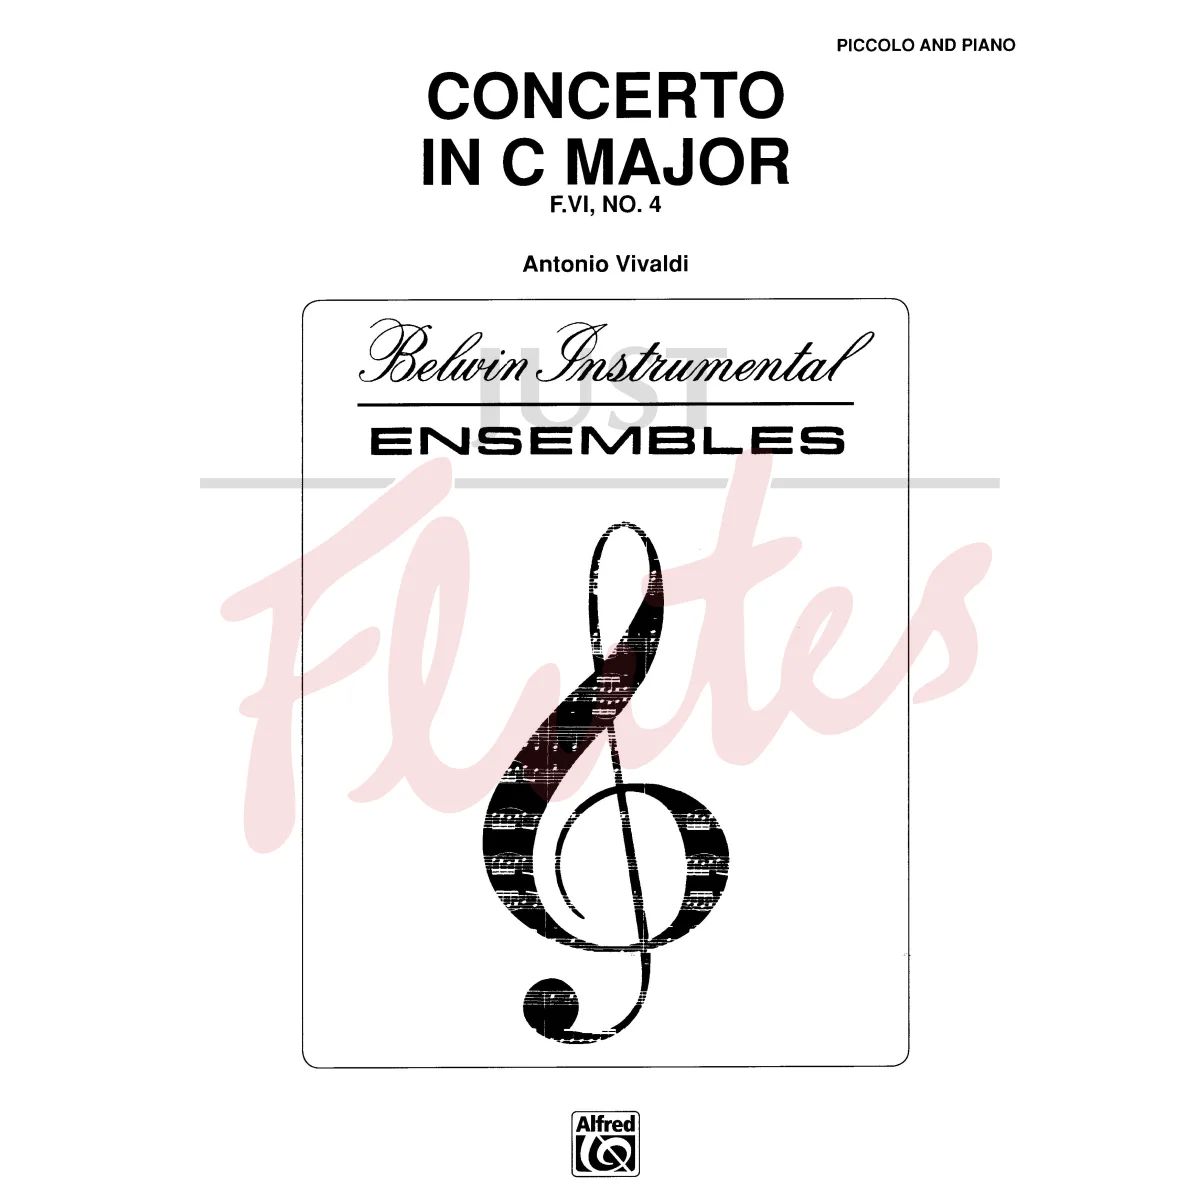 Concerto in C major for Piccolo and Piano